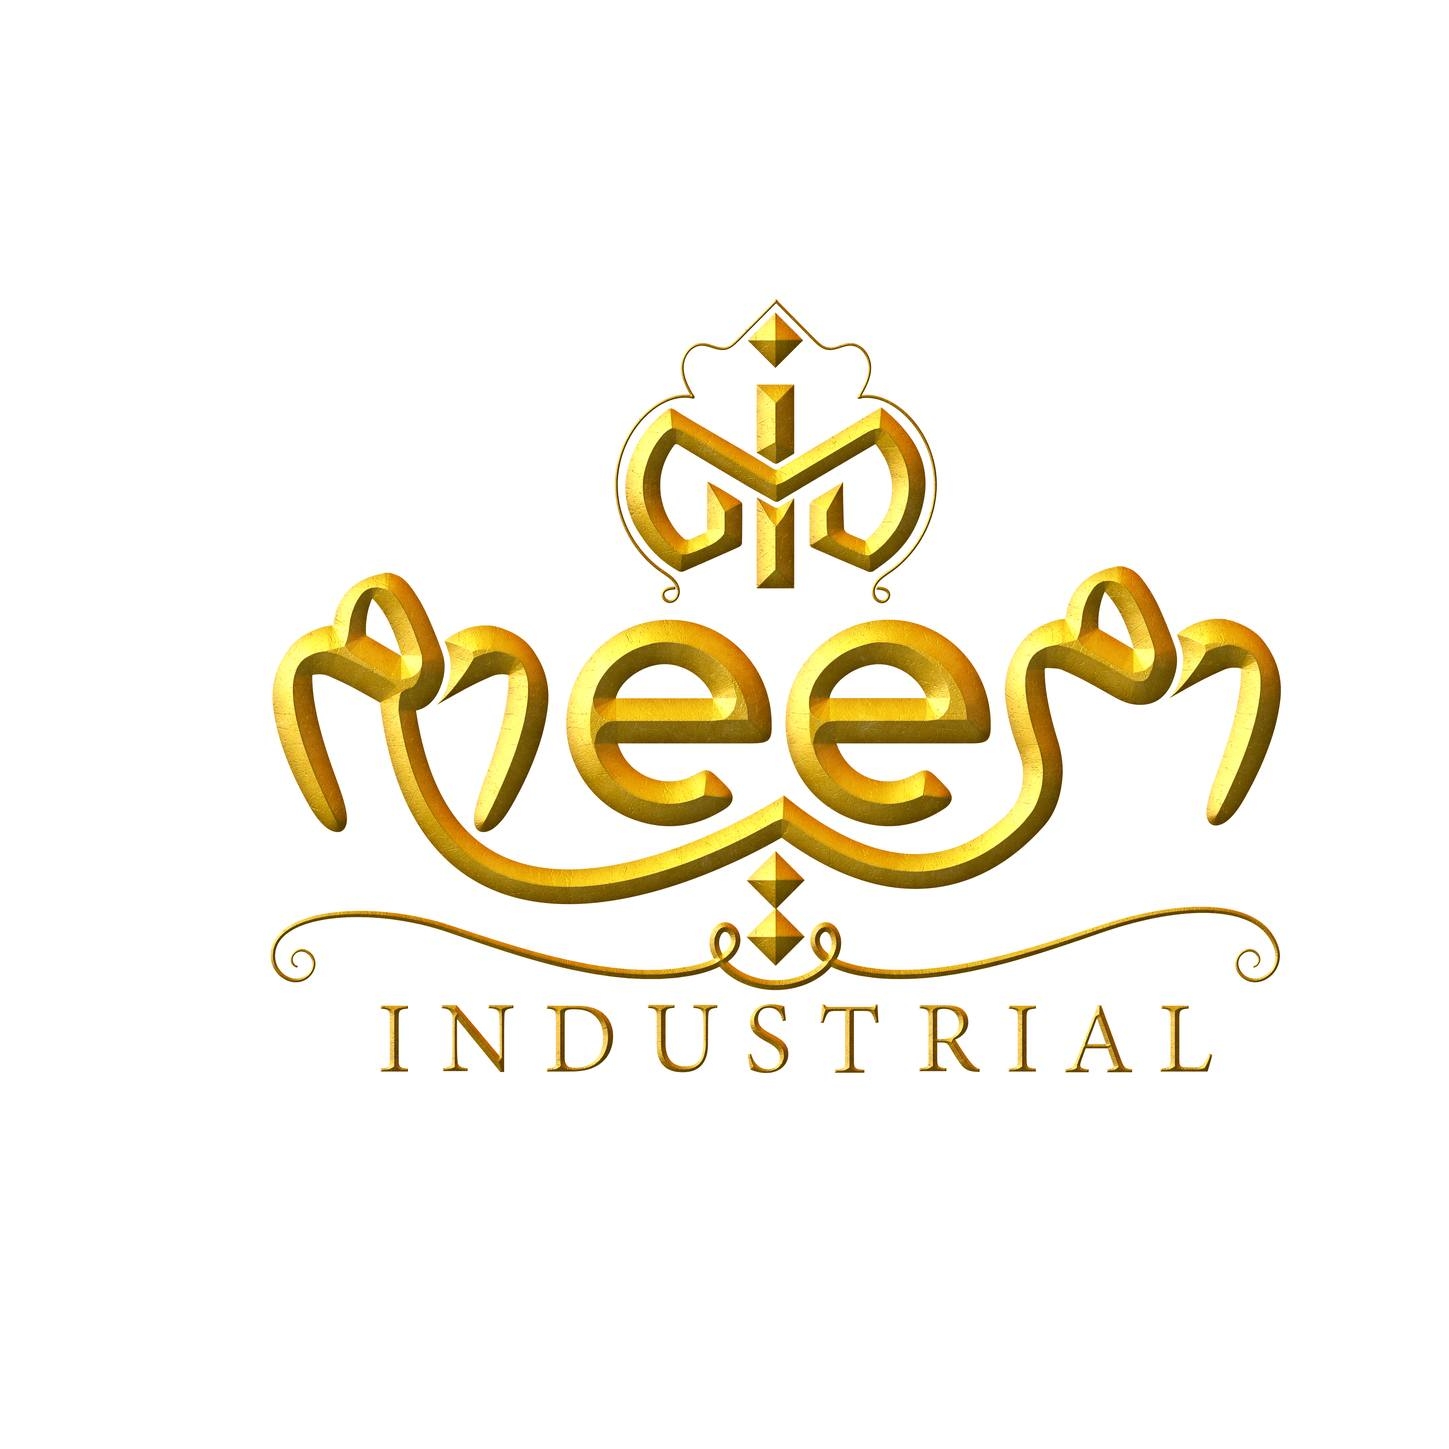 Meem Industrial - Tools supplier